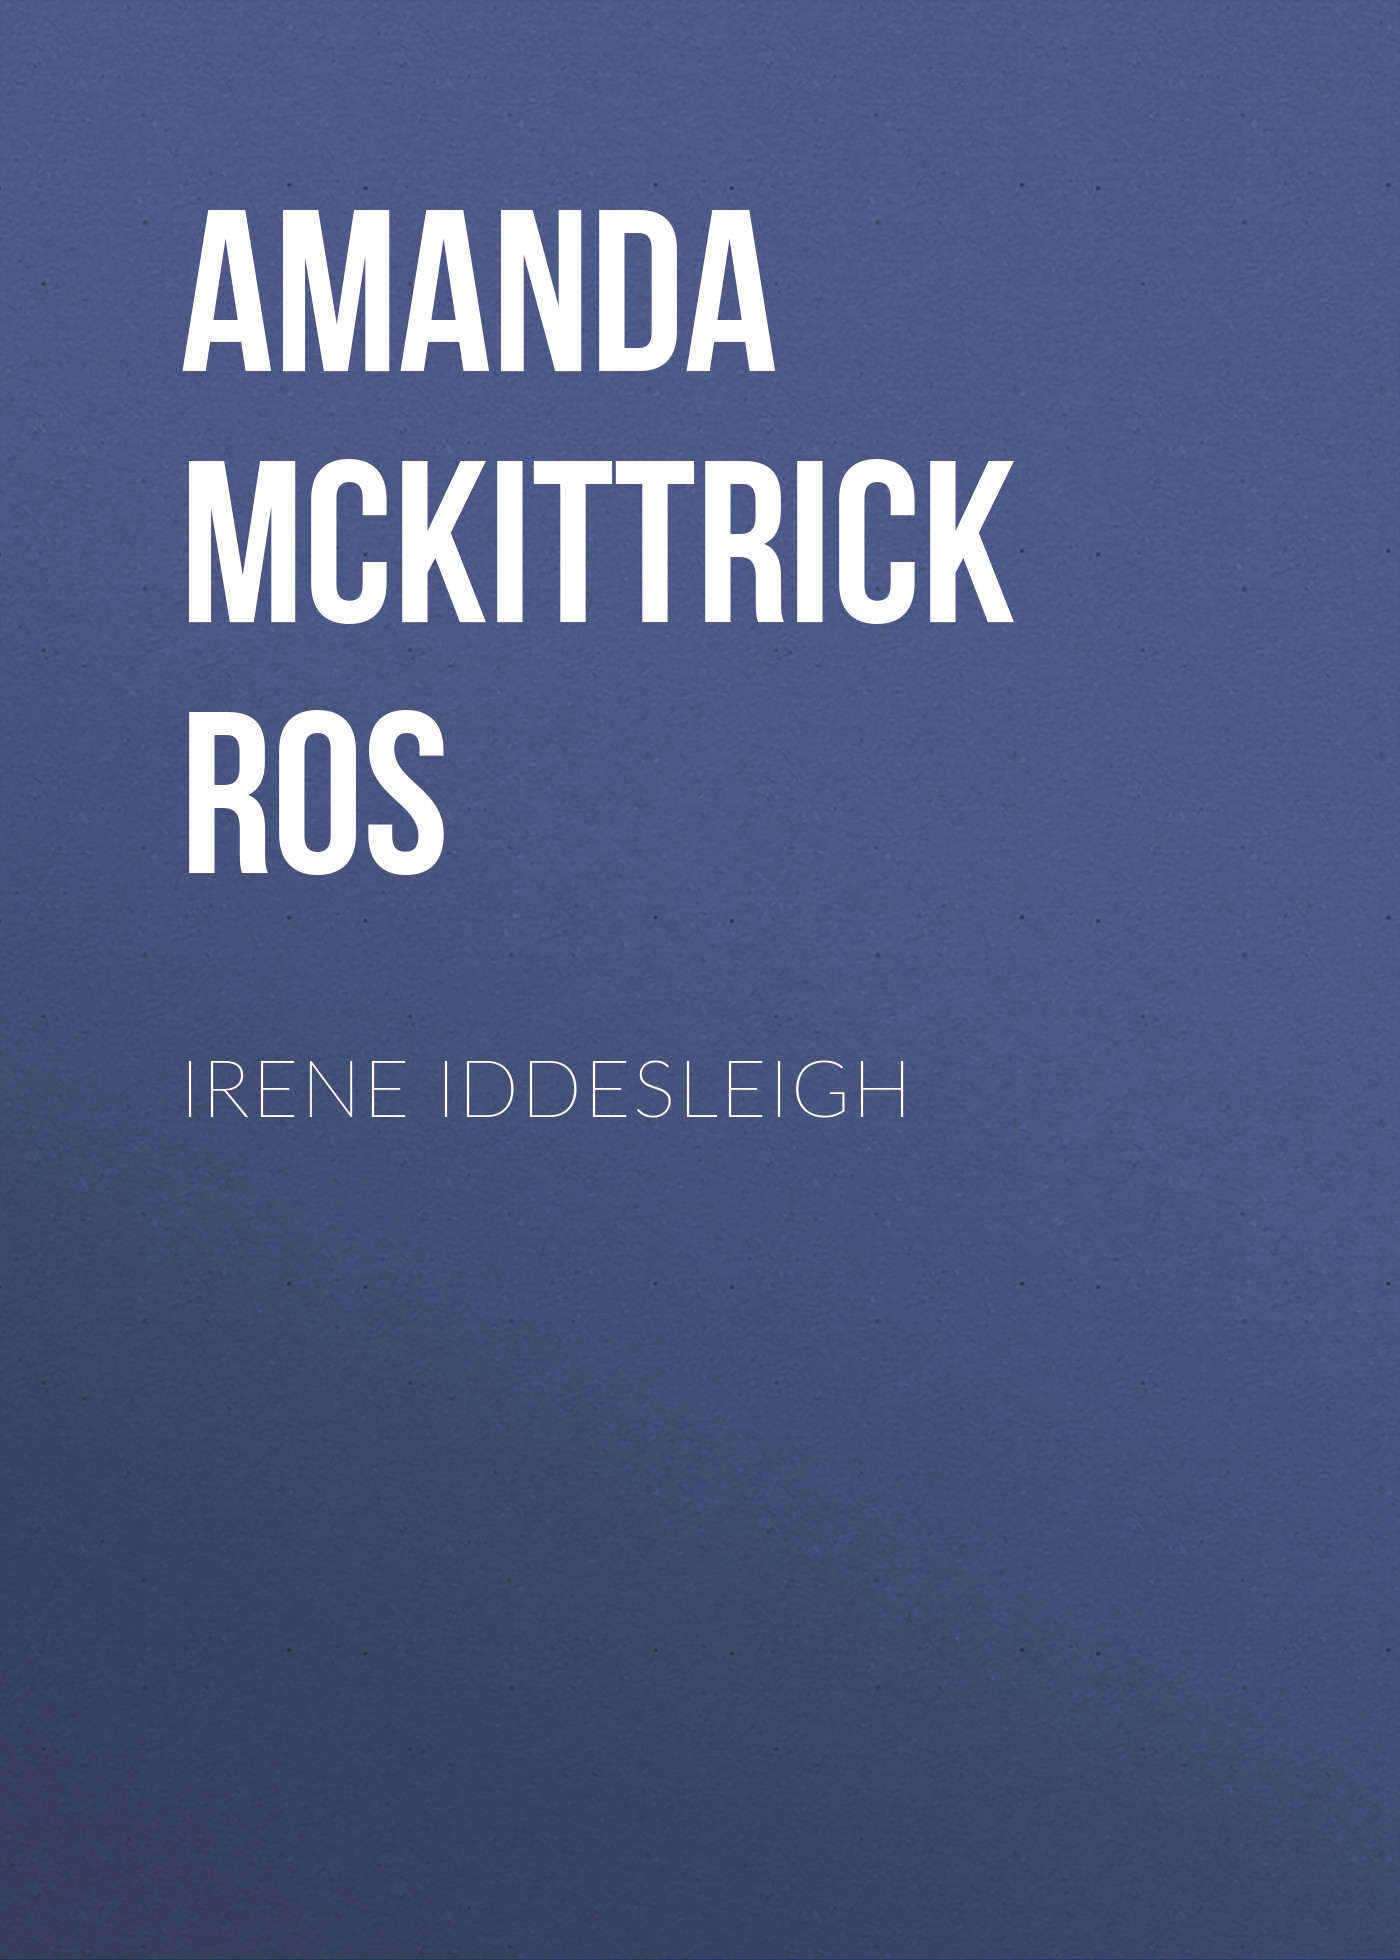 Книга Irene Iddesleigh из серии , созданная Amanda McKittrick Ros, может относится к жанру Зарубежная классика, Зарубежная старинная литература. Стоимость электронной книги Irene Iddesleigh с идентификатором 36365142 составляет 0 руб.